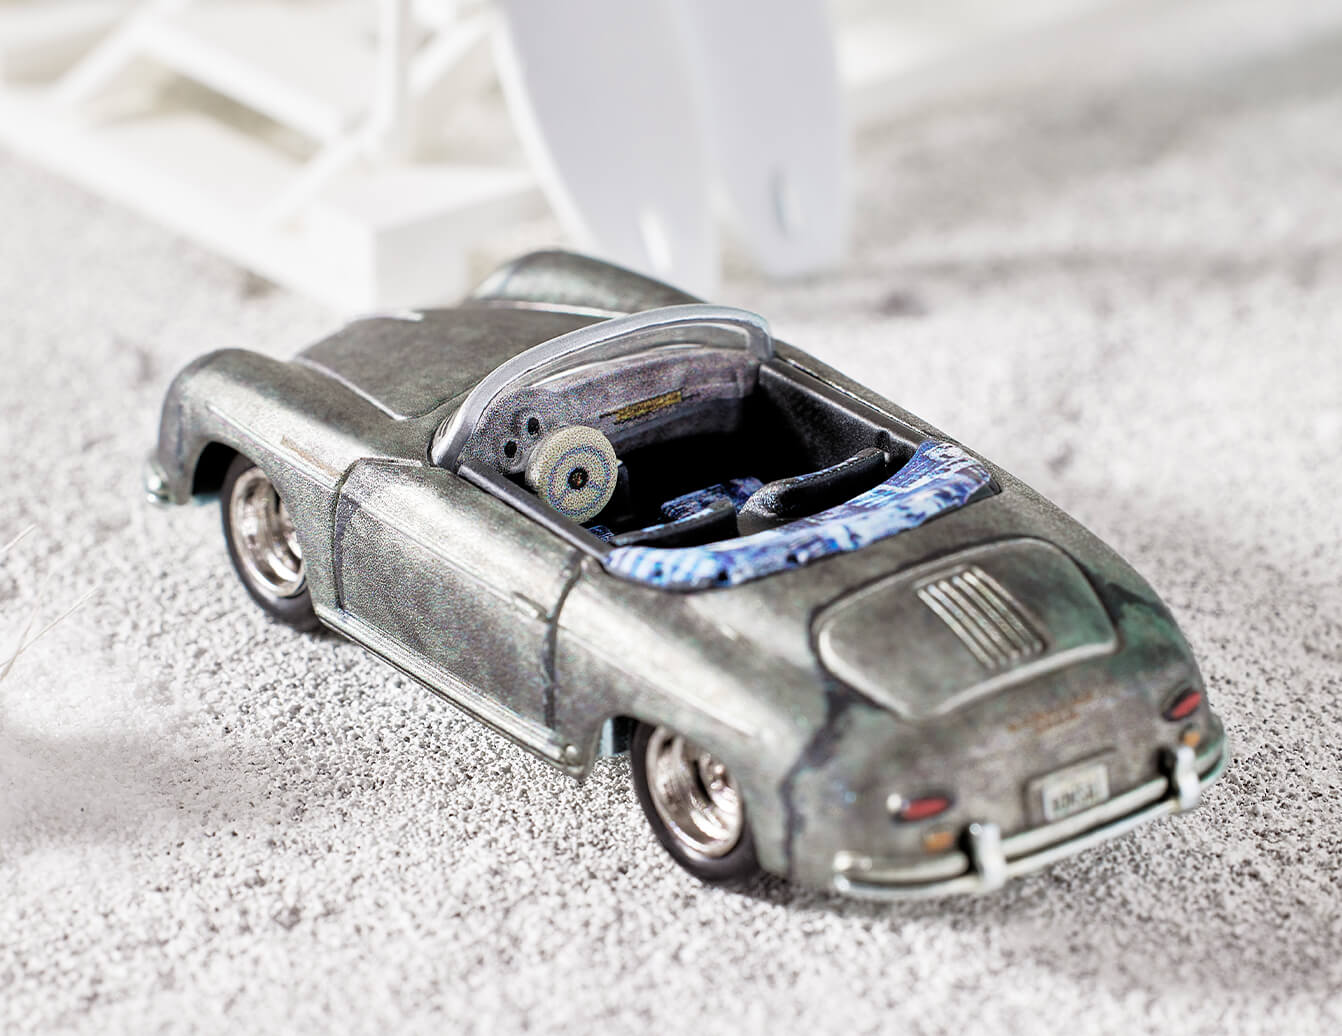 Hot Wheels x Daniel Arsham Porsche 356 “Bonsai” Speedster – Mattel Creations